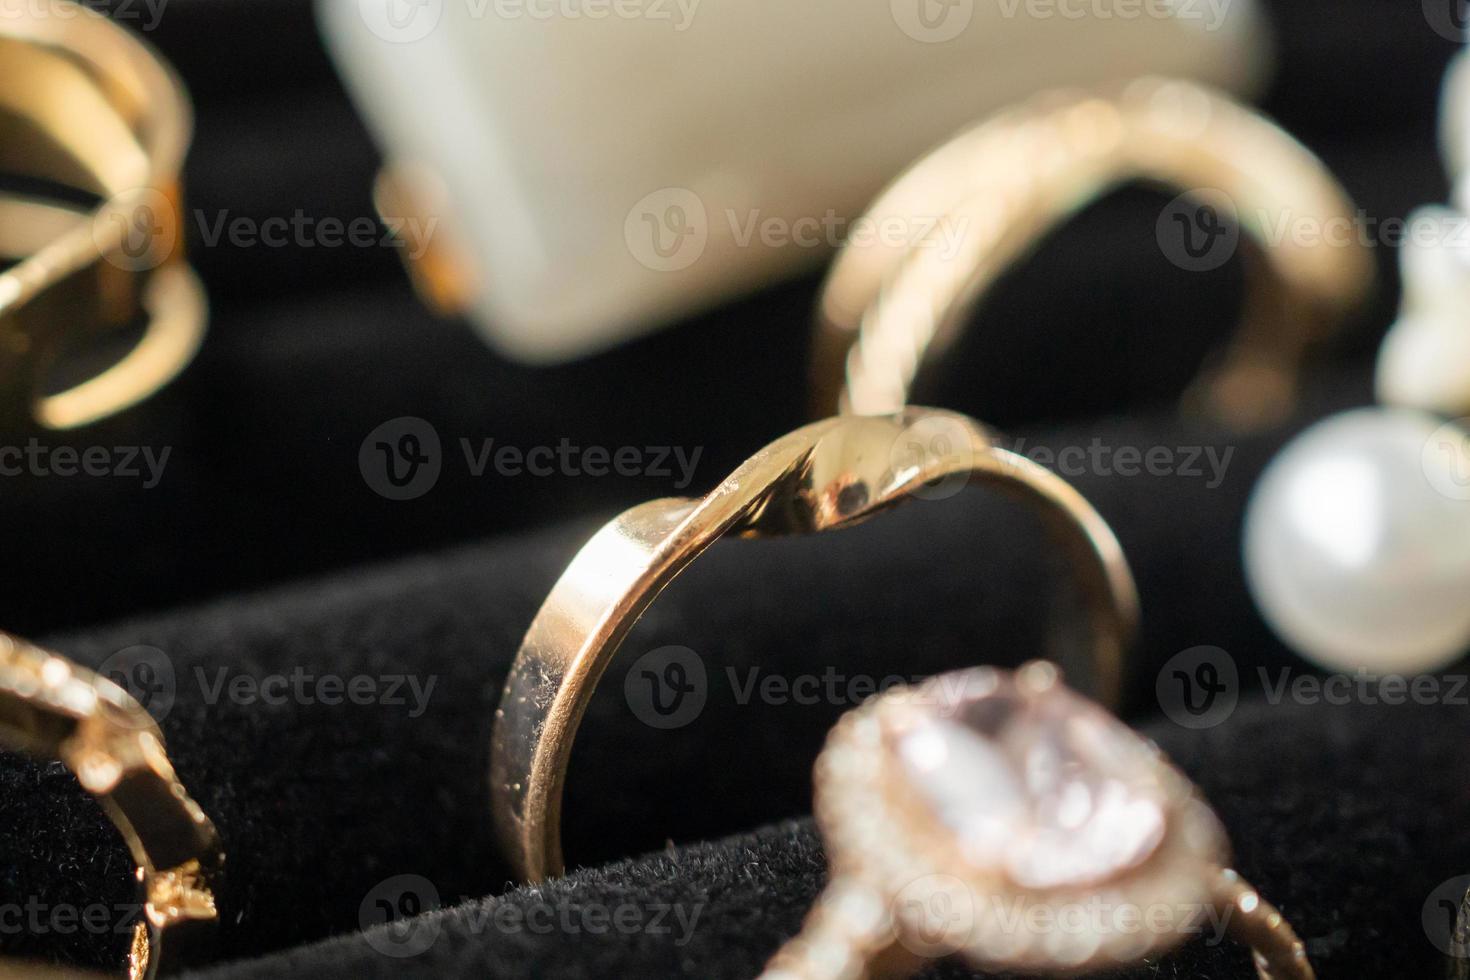 exhibición de anillos de diamantes de joyería de oro en escaparate de exhibición de tienda minorista de lujo foto